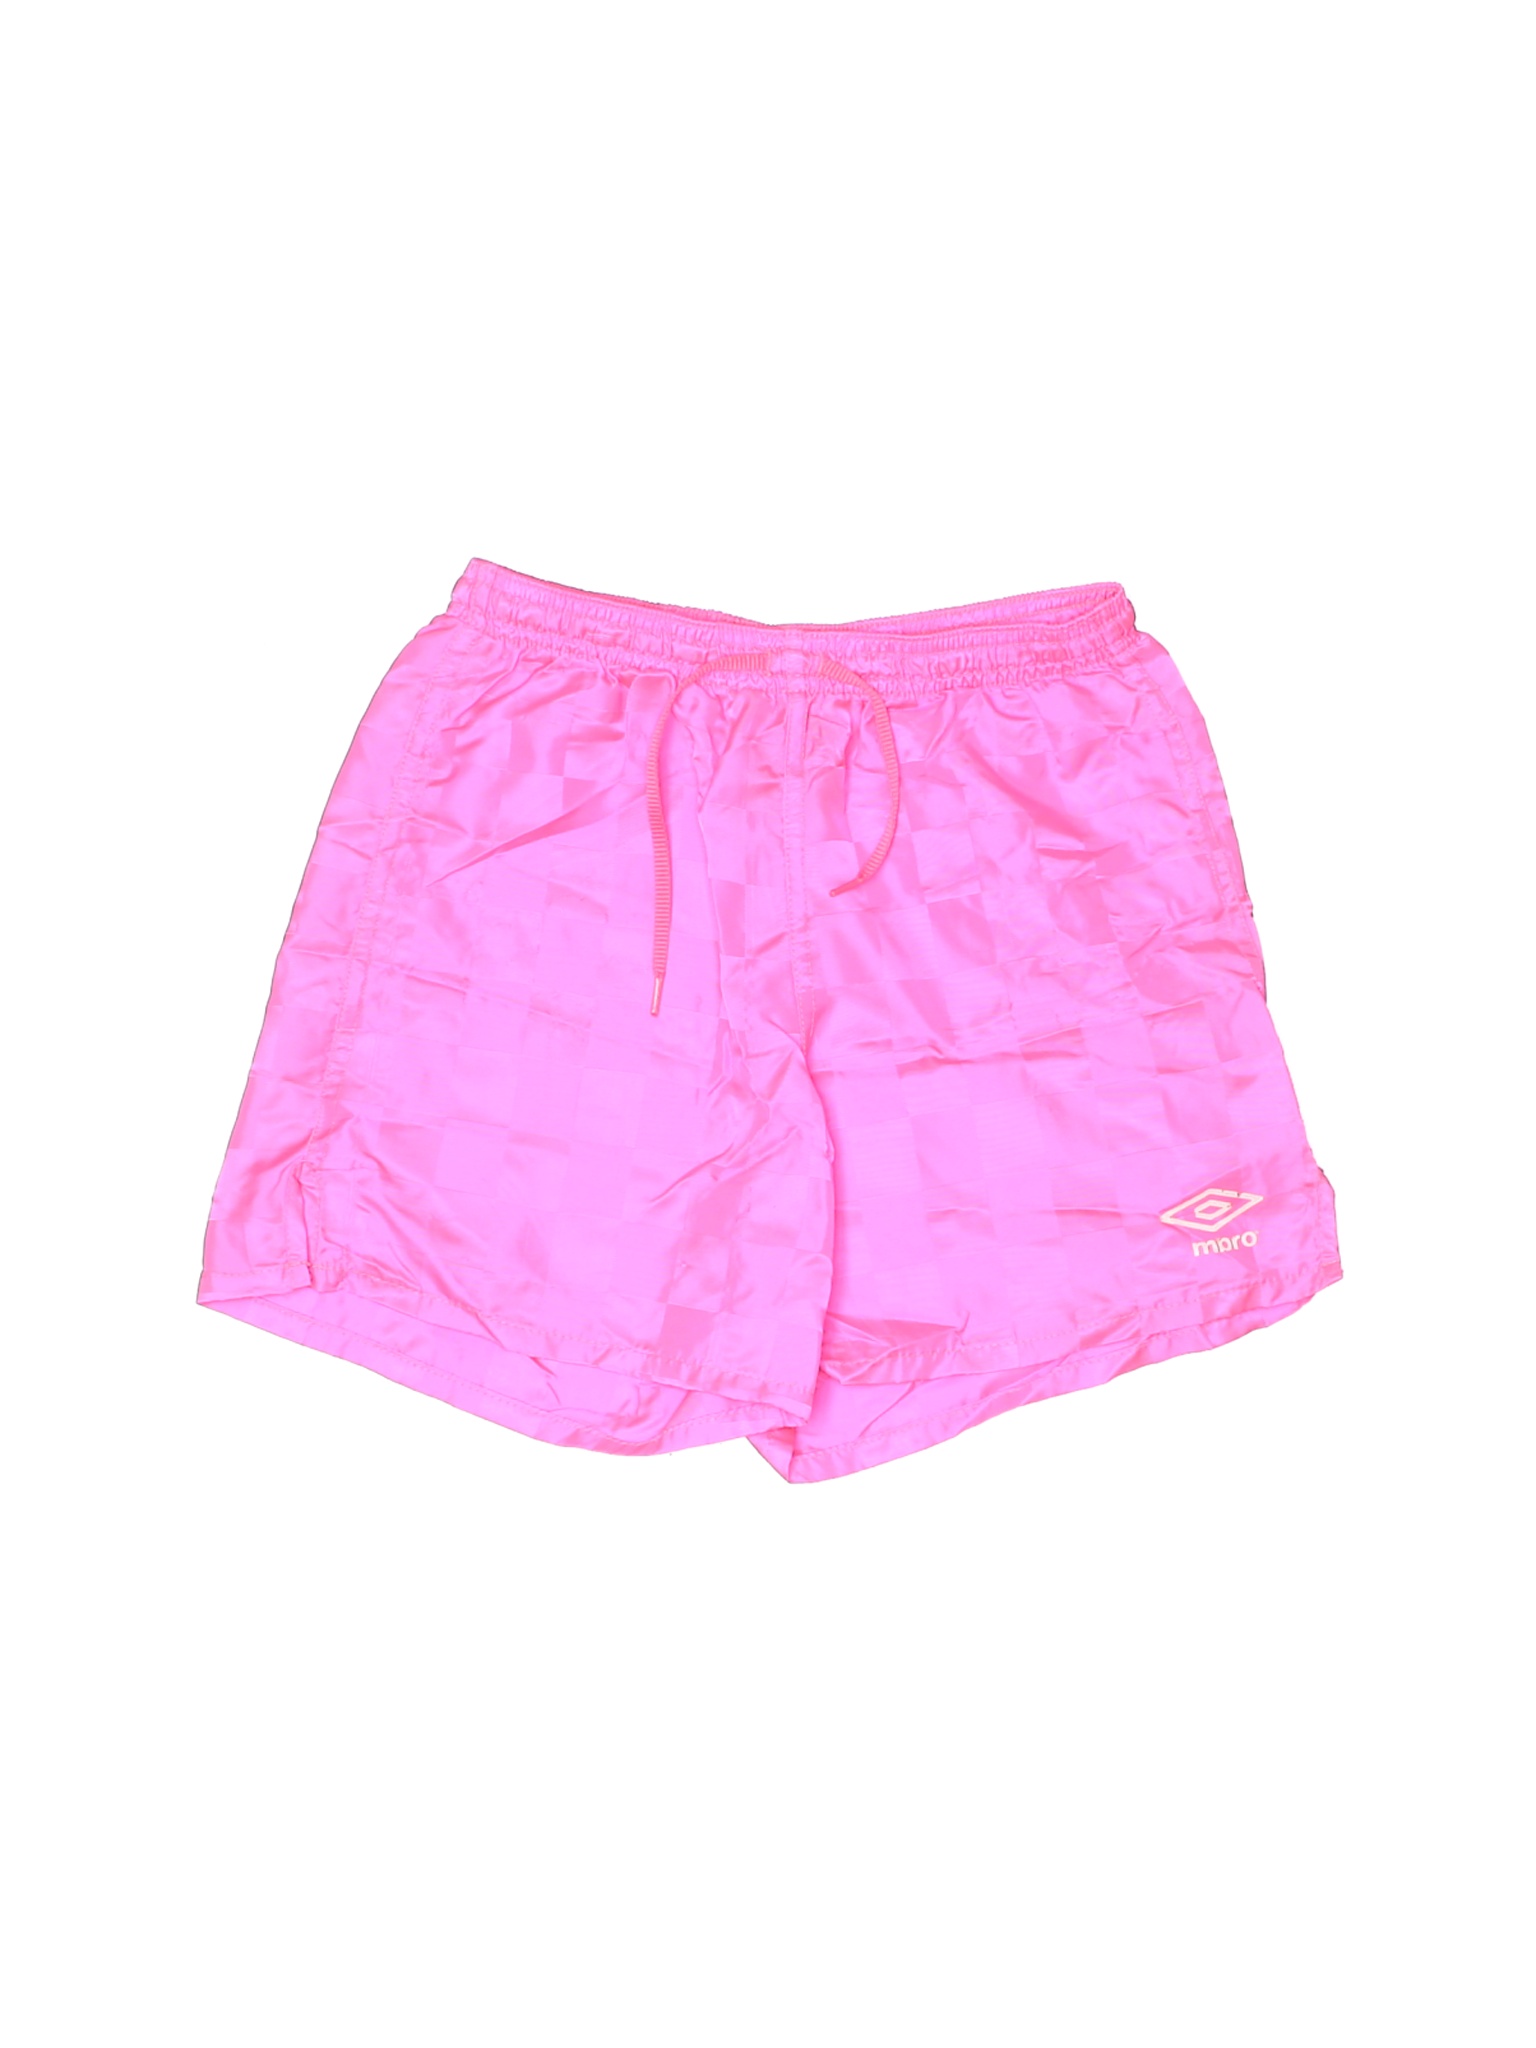 Umbro Girls Pink Athletic Shorts XS Youth | eBay